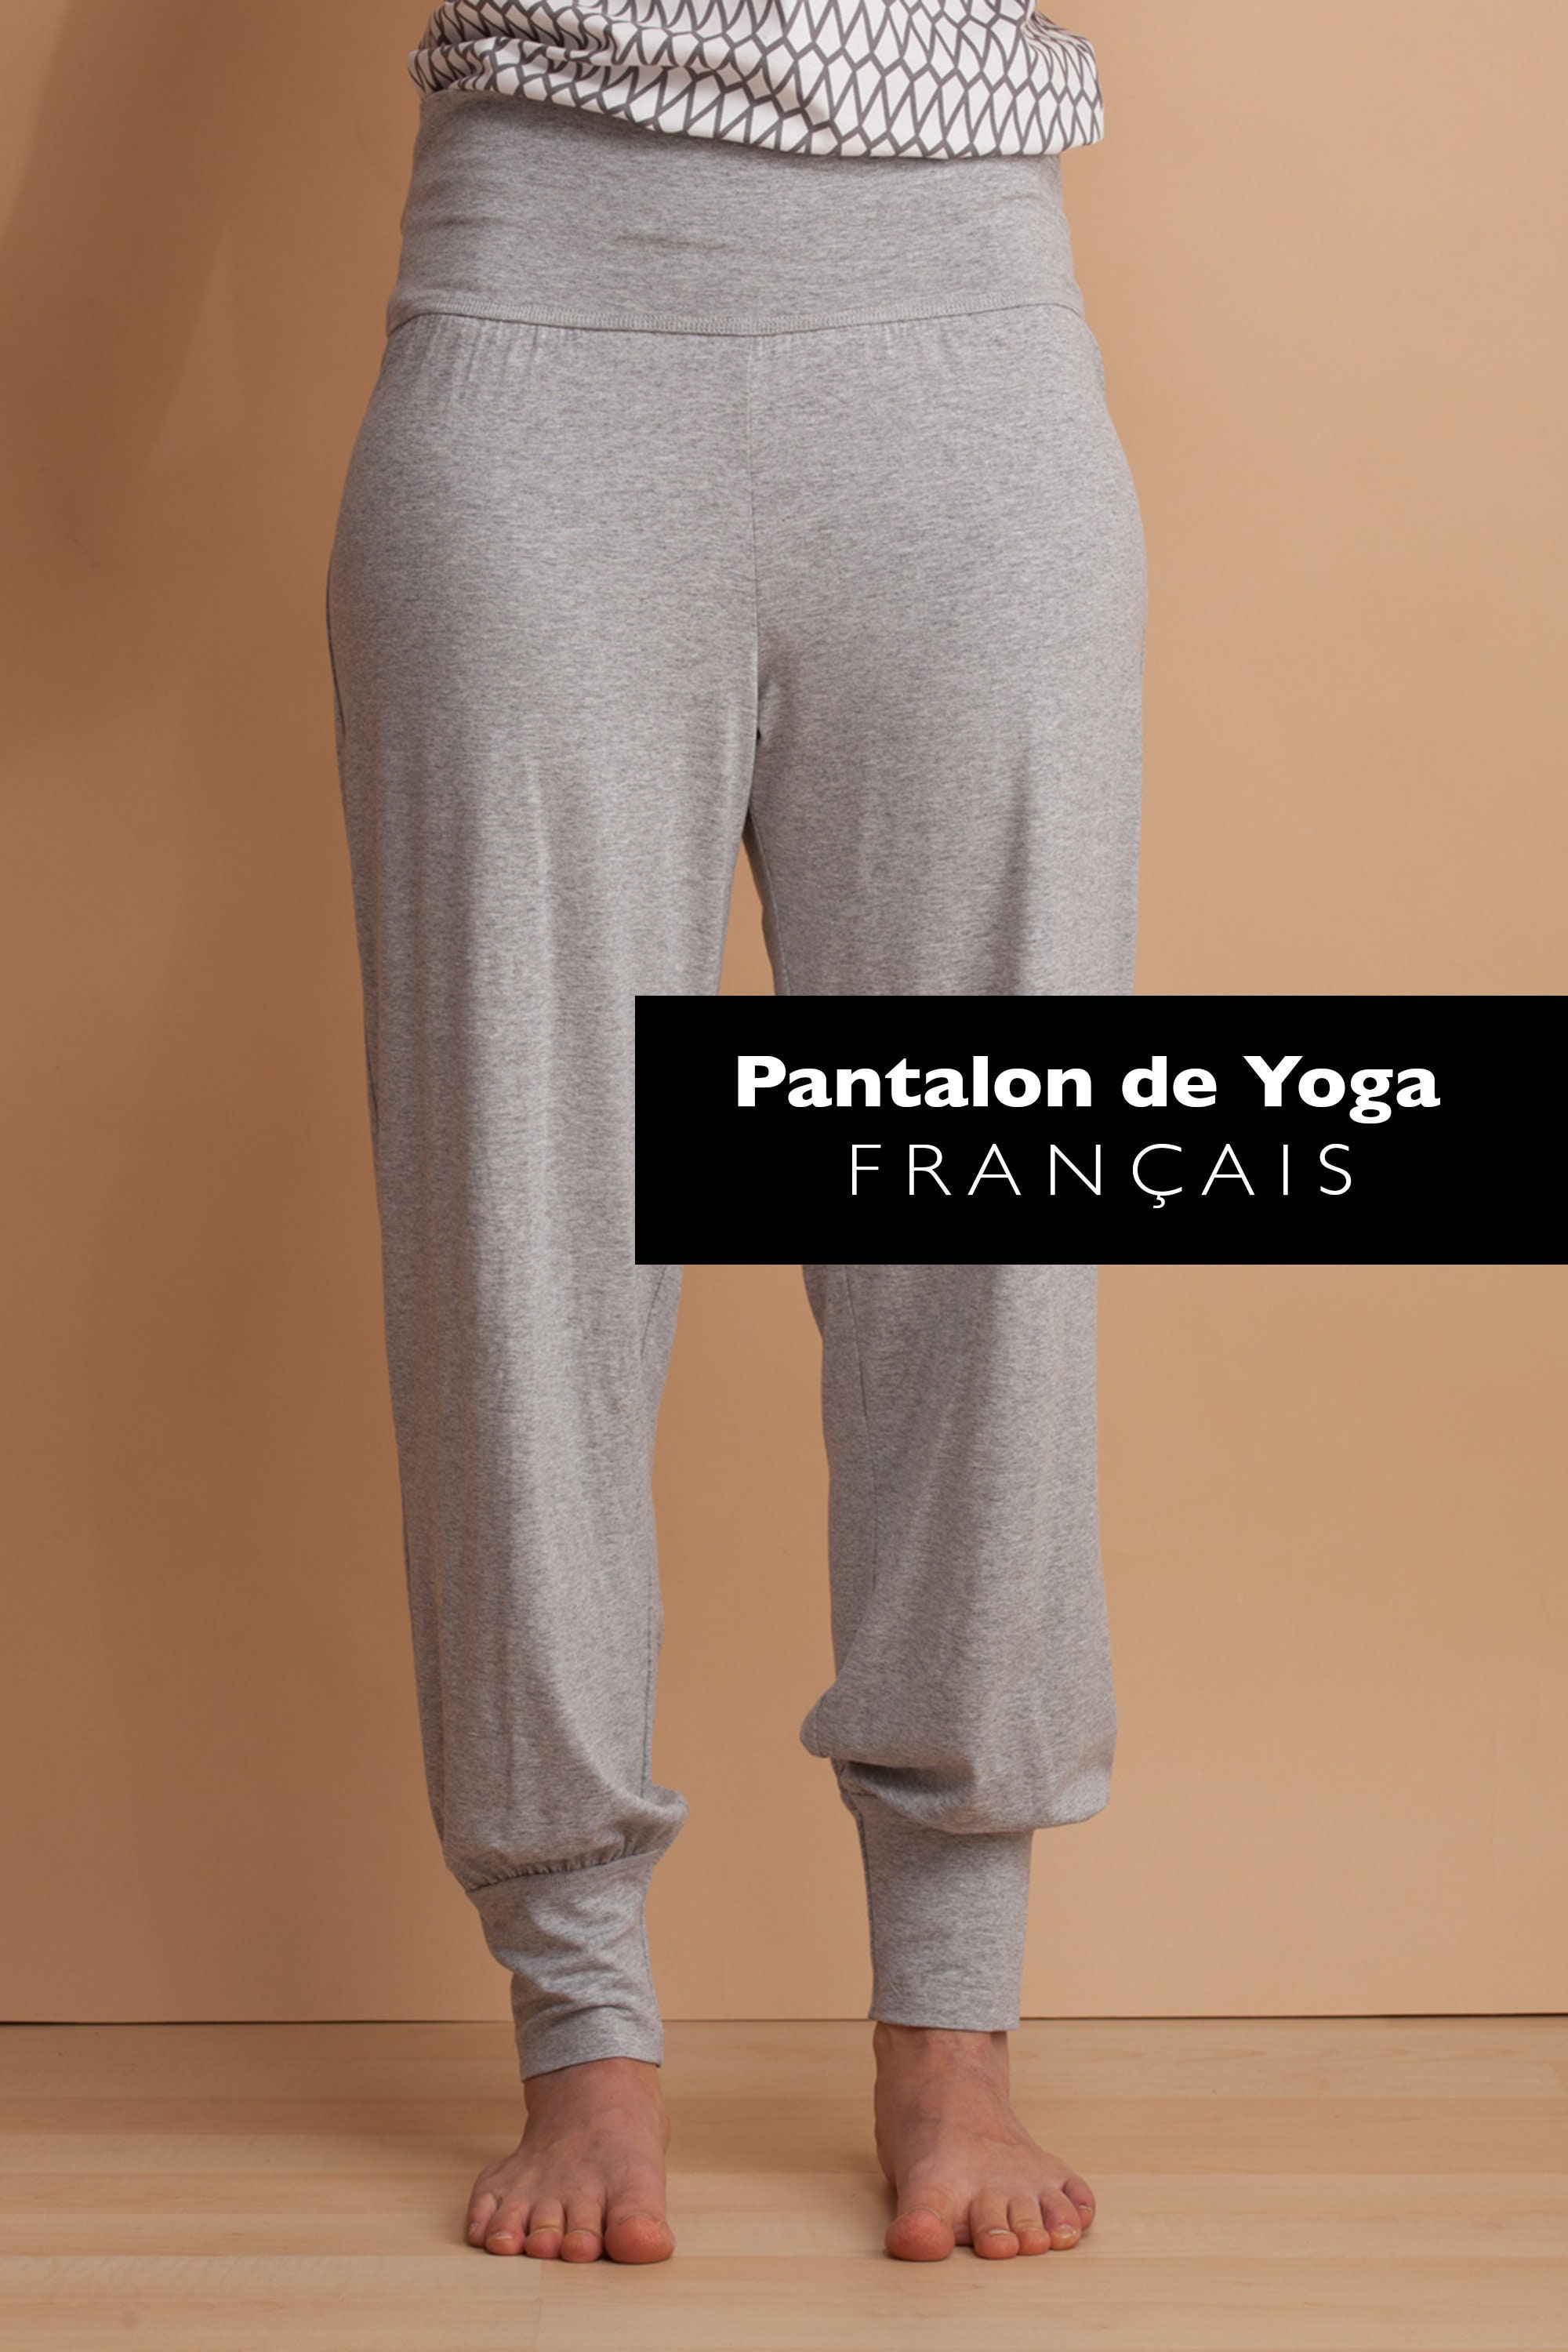 E-patron FRANÇAIS : Pantalon De Yoga Tailles Européennes 34-52 6